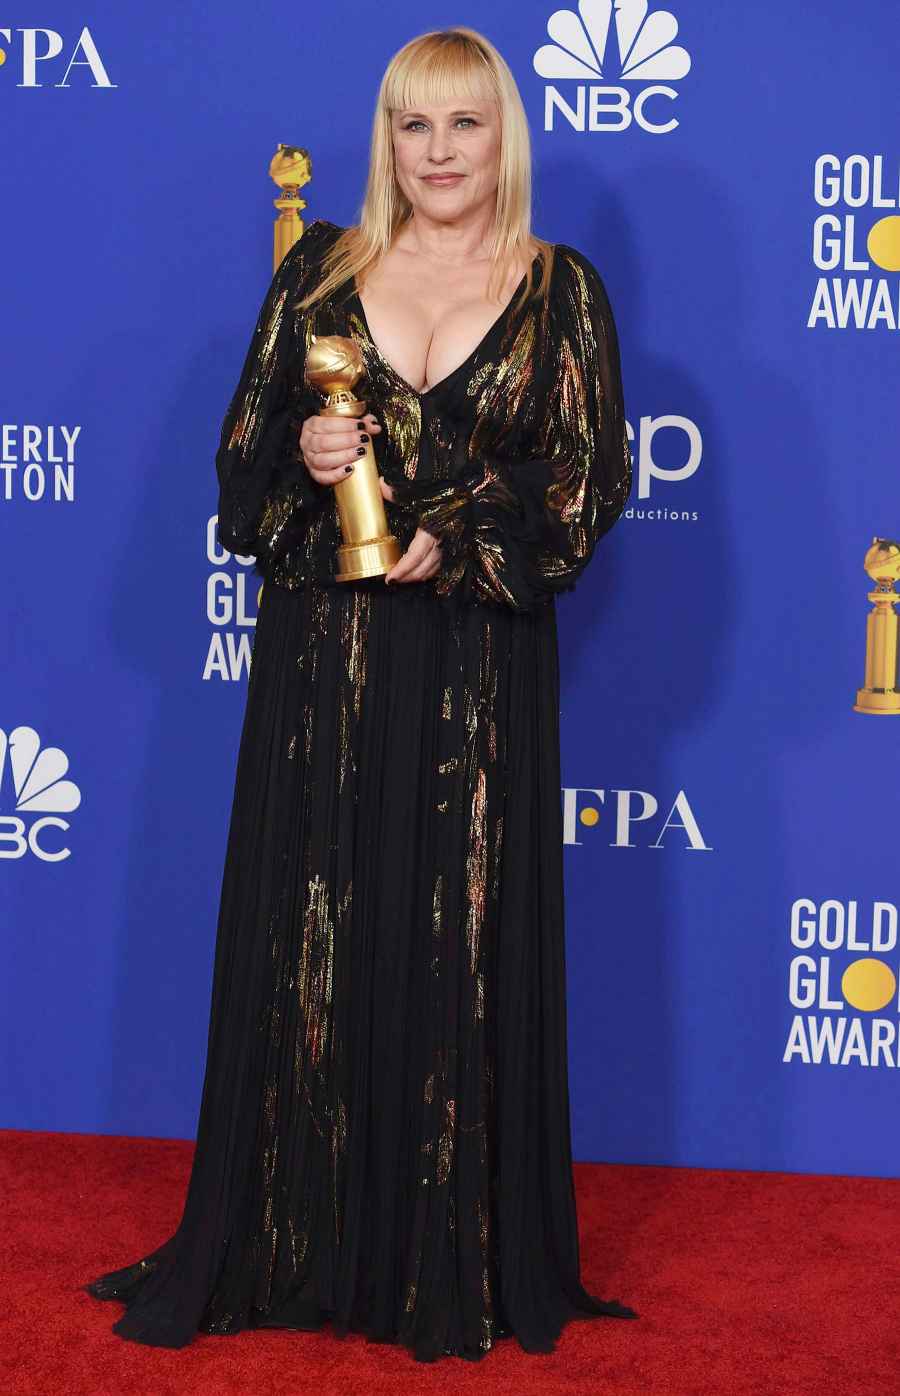 Patricia Arquette's Golden Globe Awards Looks - 2020